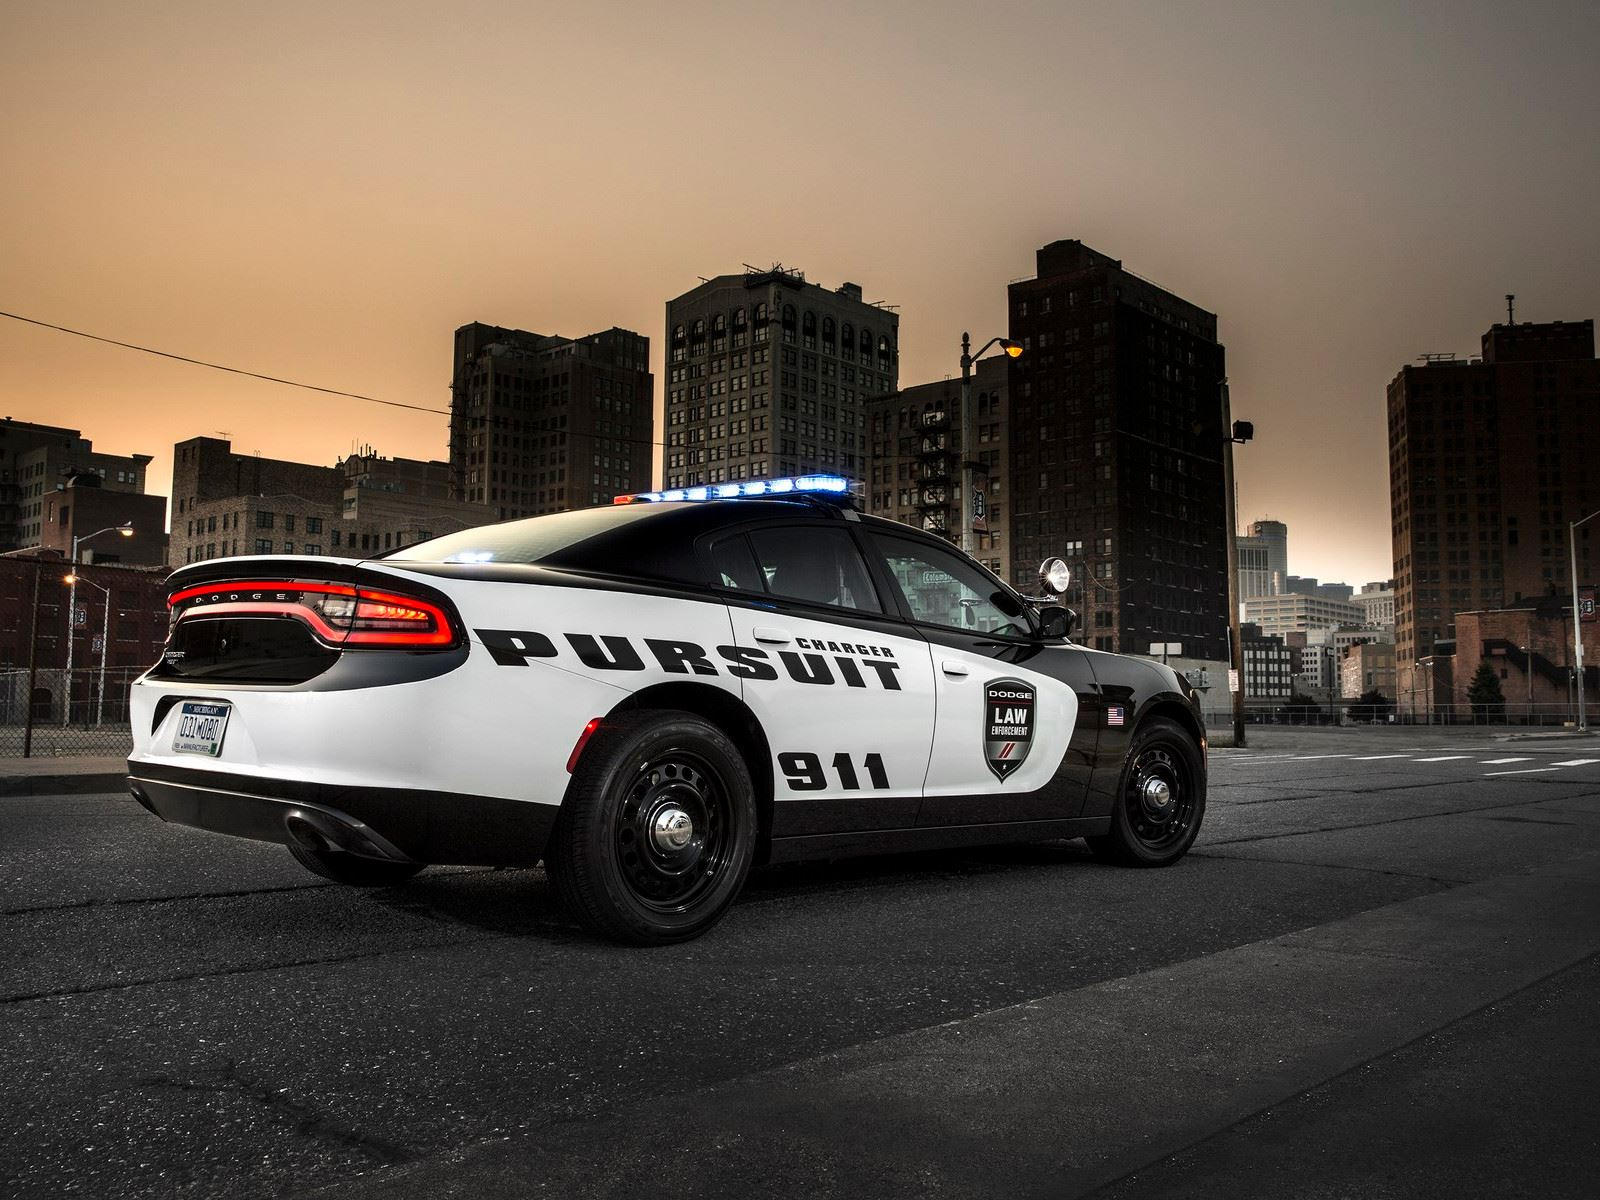 "بالصور" أكثر 10 سيارات شرطة تميزا حول العالم 13